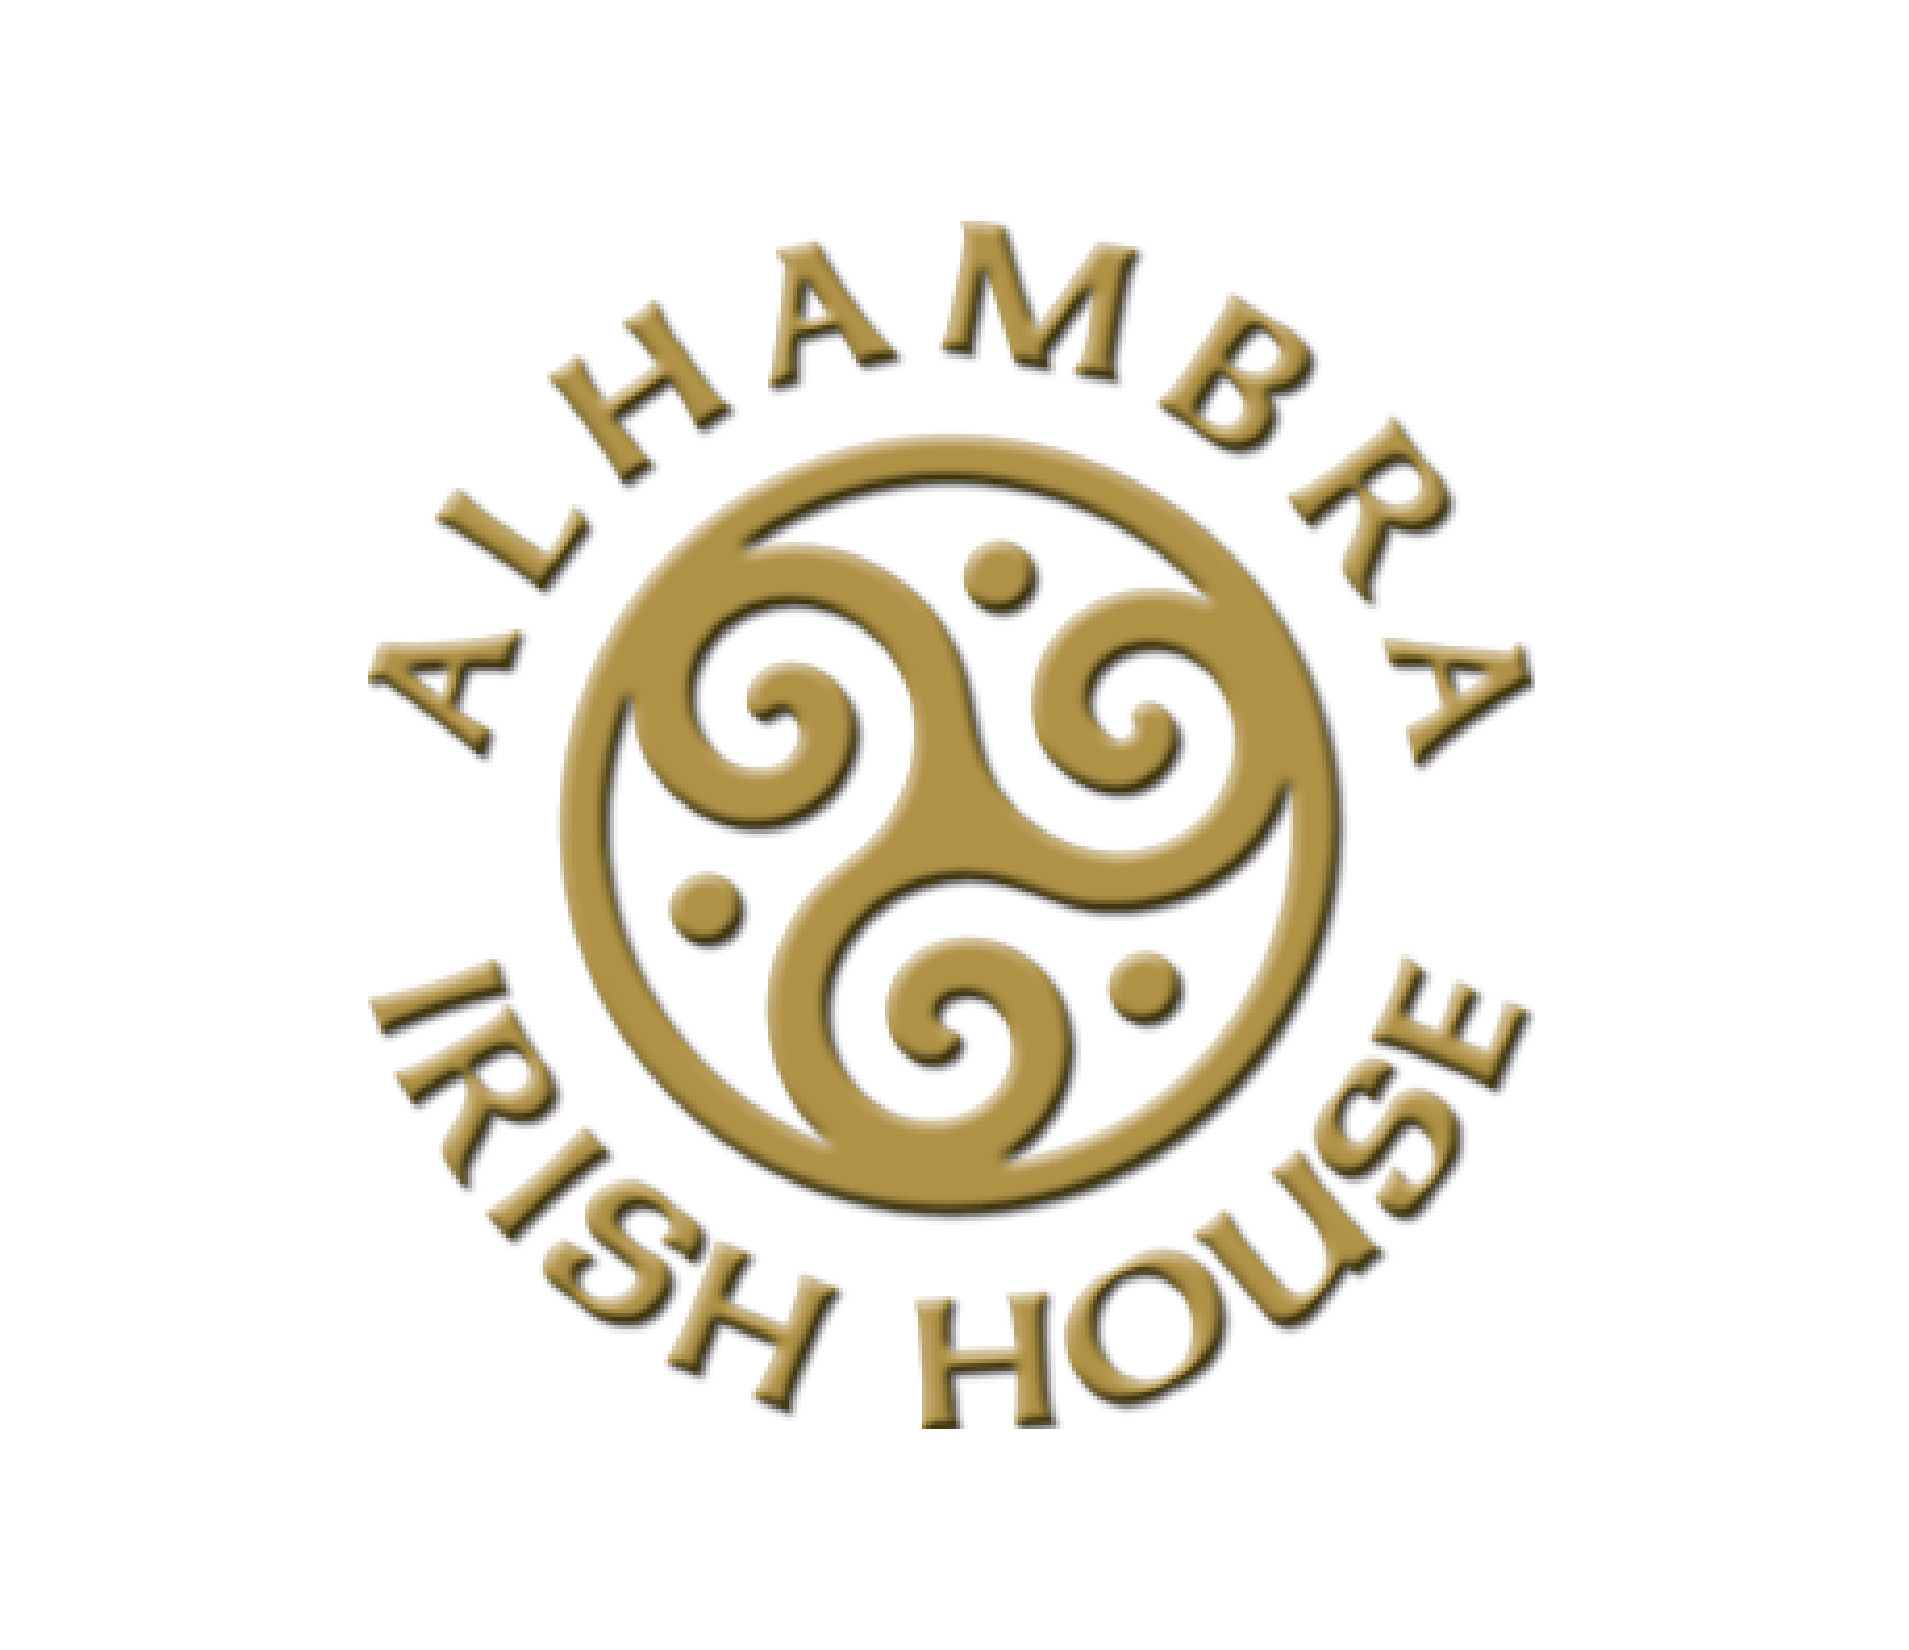 Alhambra Irish House